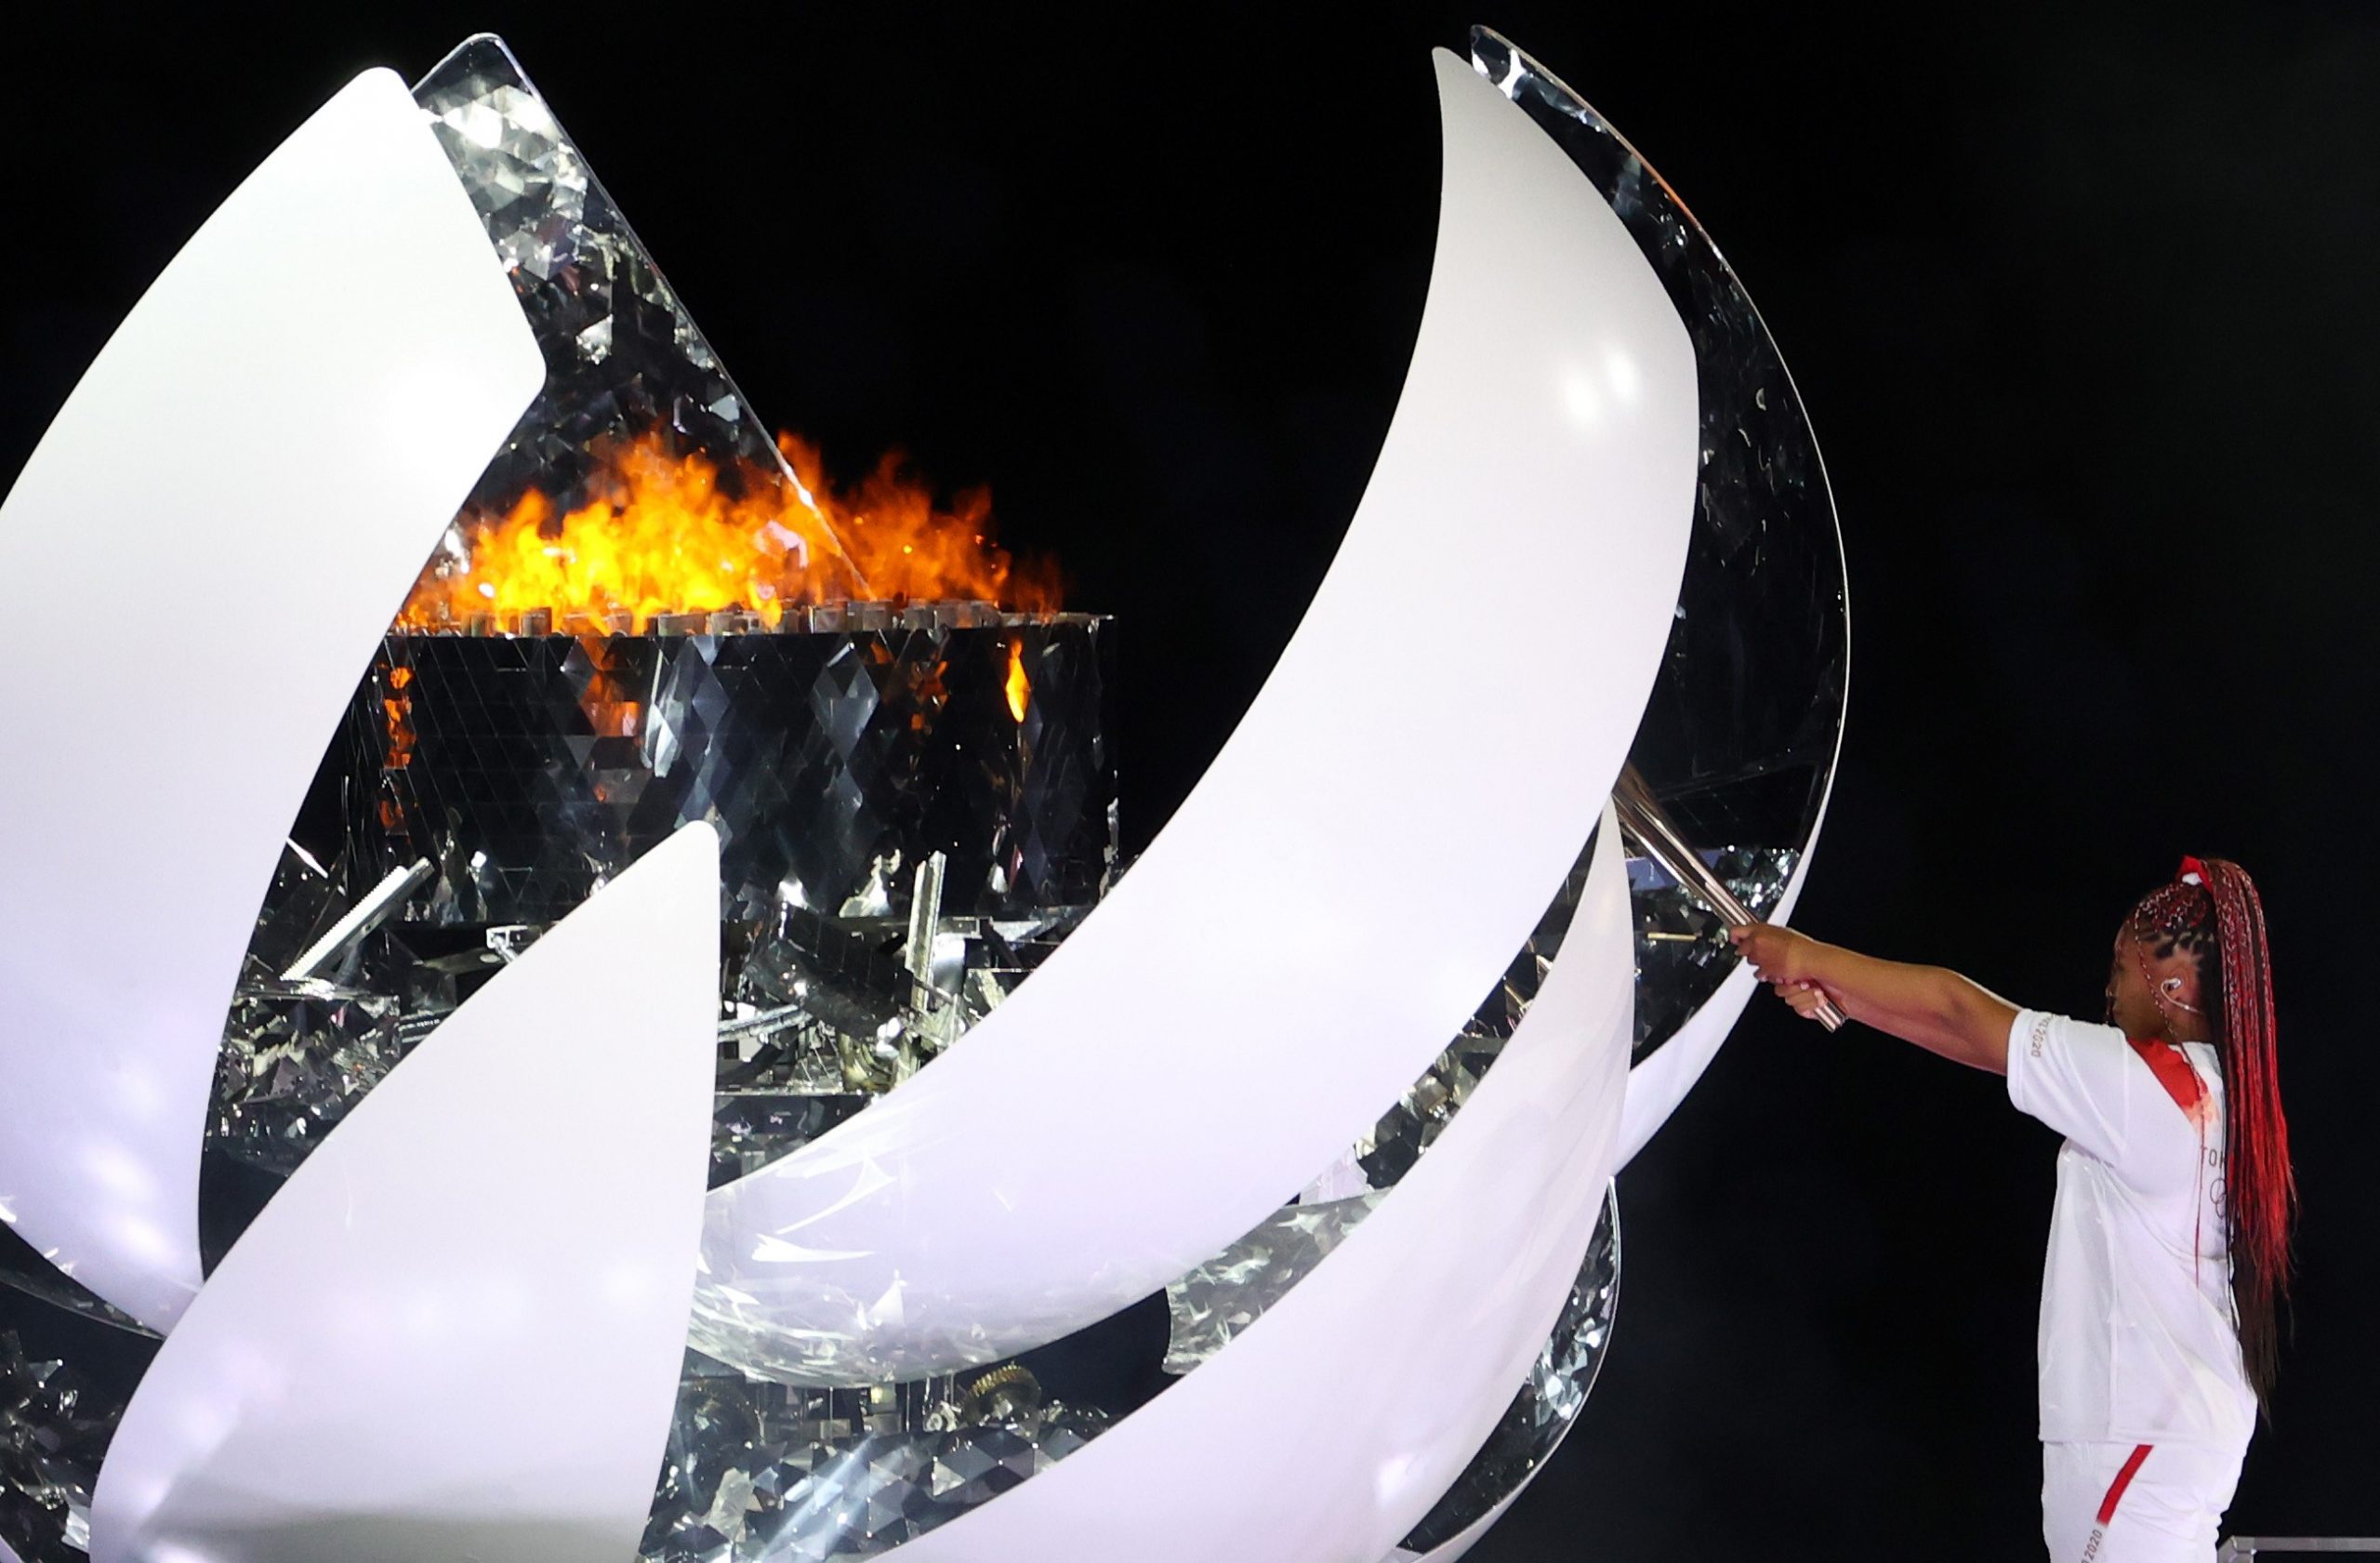 Tokio, 23.07.2021 - Svečanost otvaranja Olimpijskih igara Tokio 2020 na Olimpijskom stadionu u Tokiju. Paljenjem plamena otvorene su Olimpijske igre.
foto HINA/ Damir SENČAR/ ds